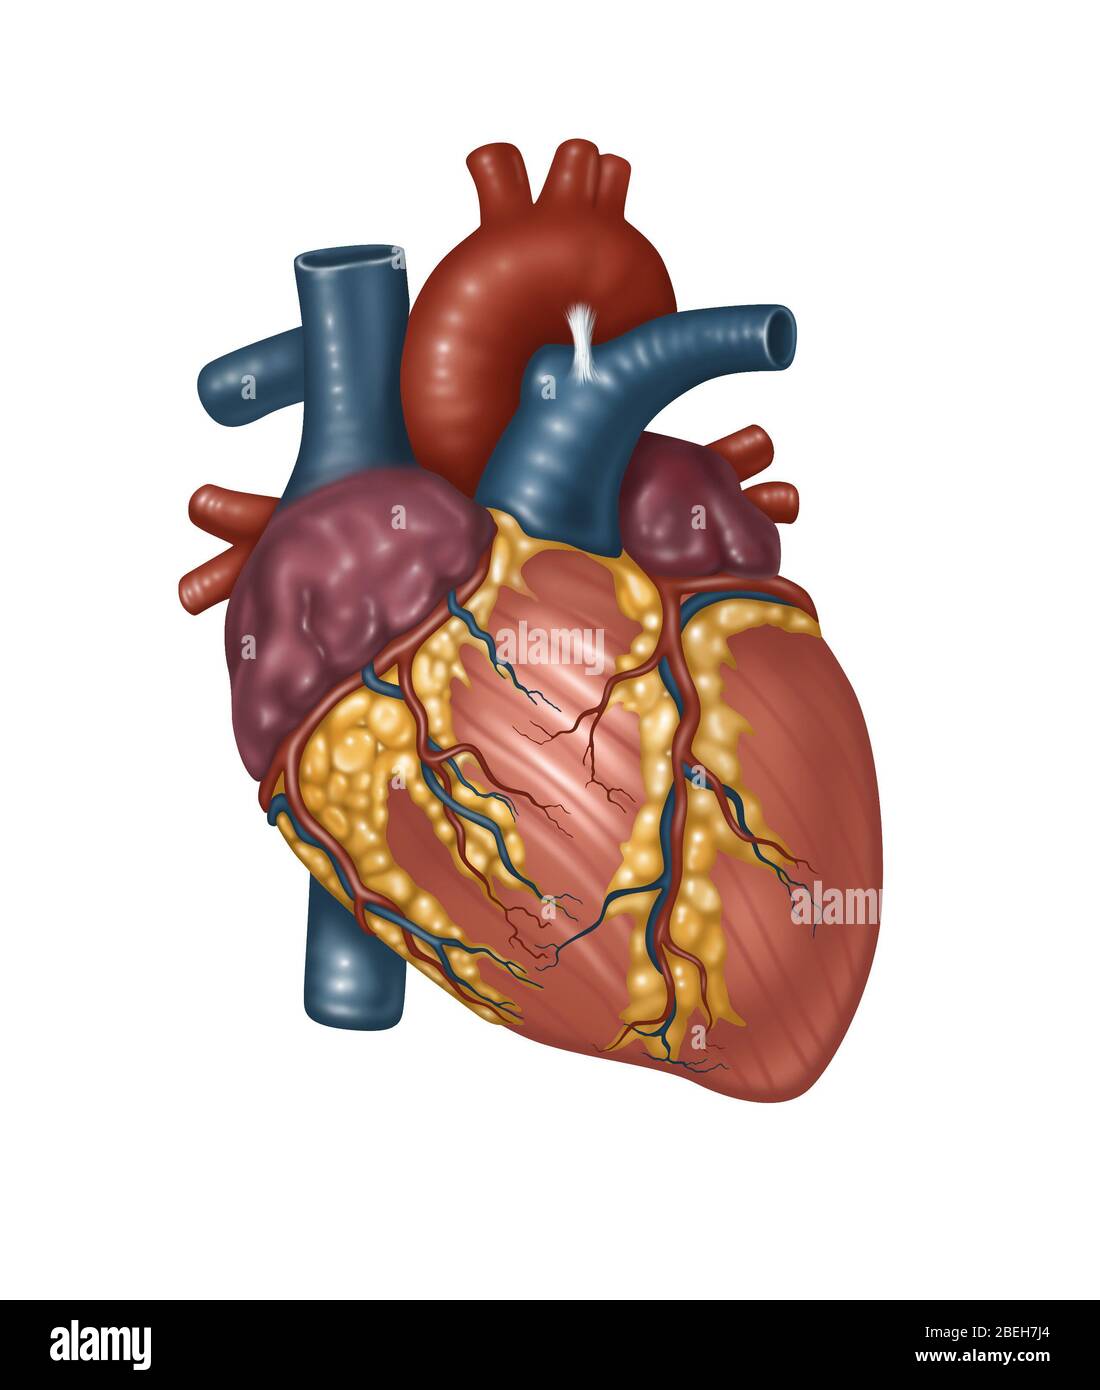 Anatomie cardiaque saine, illustration Banque D'Images